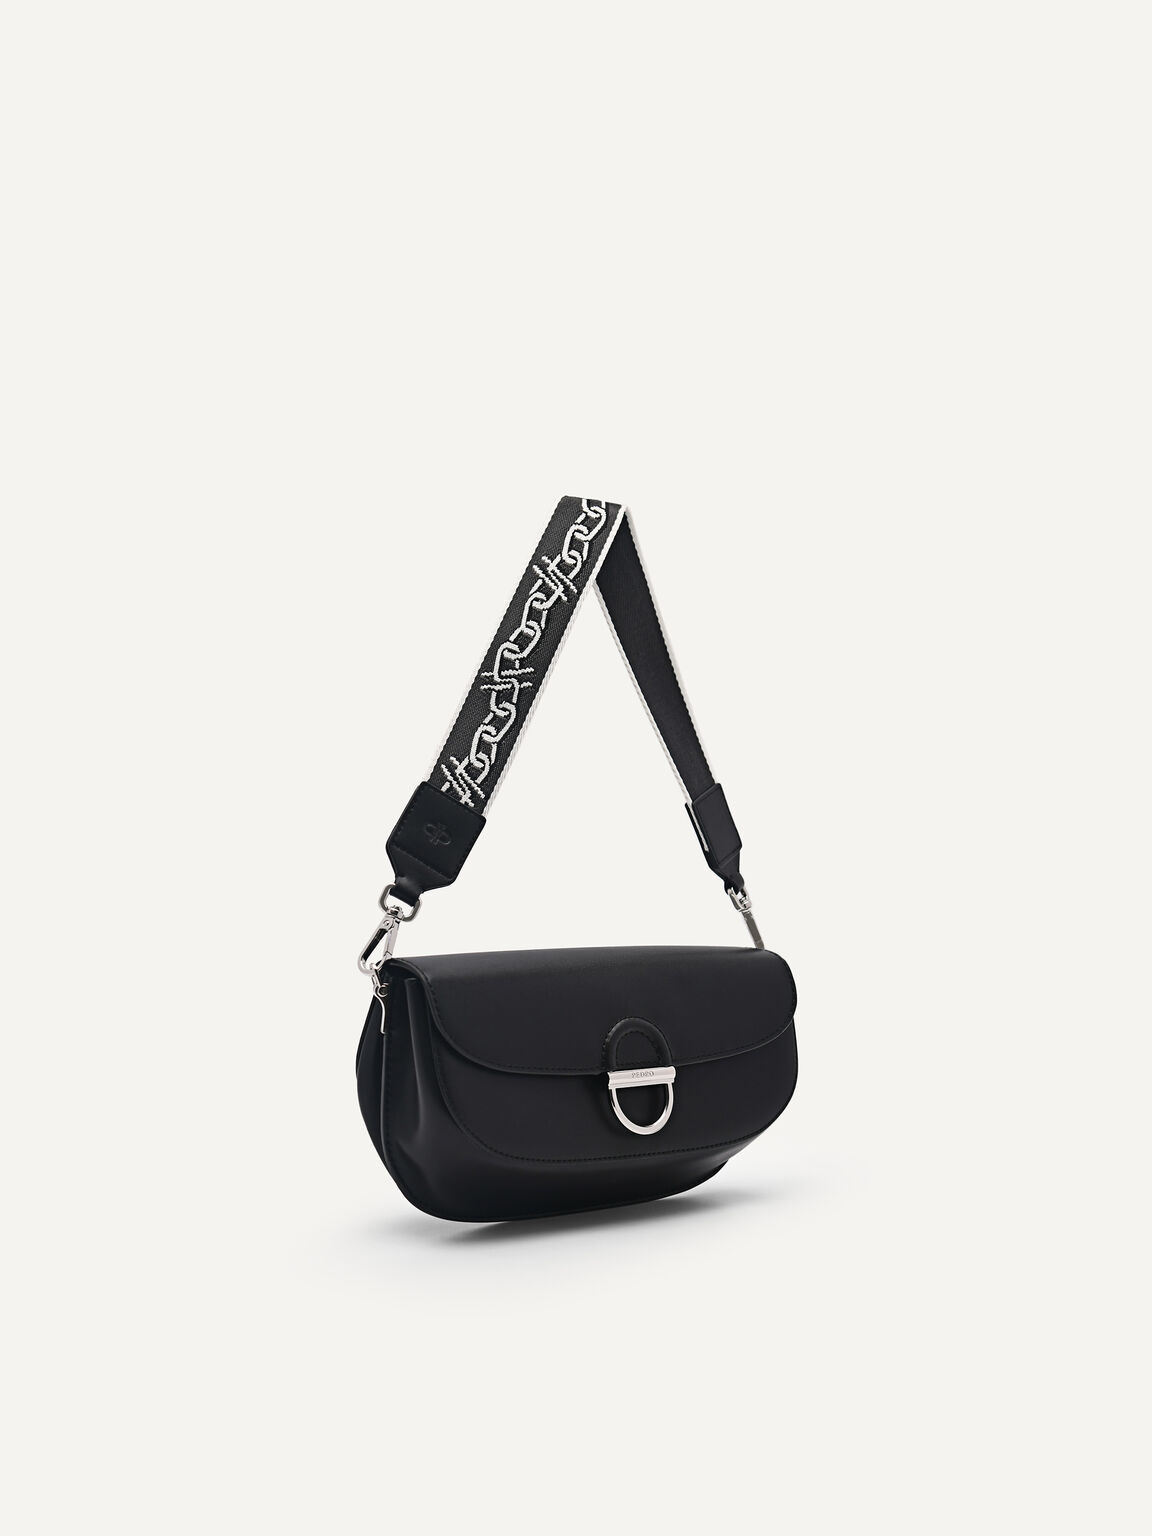 Jean Leather Shoulder Bag, Black